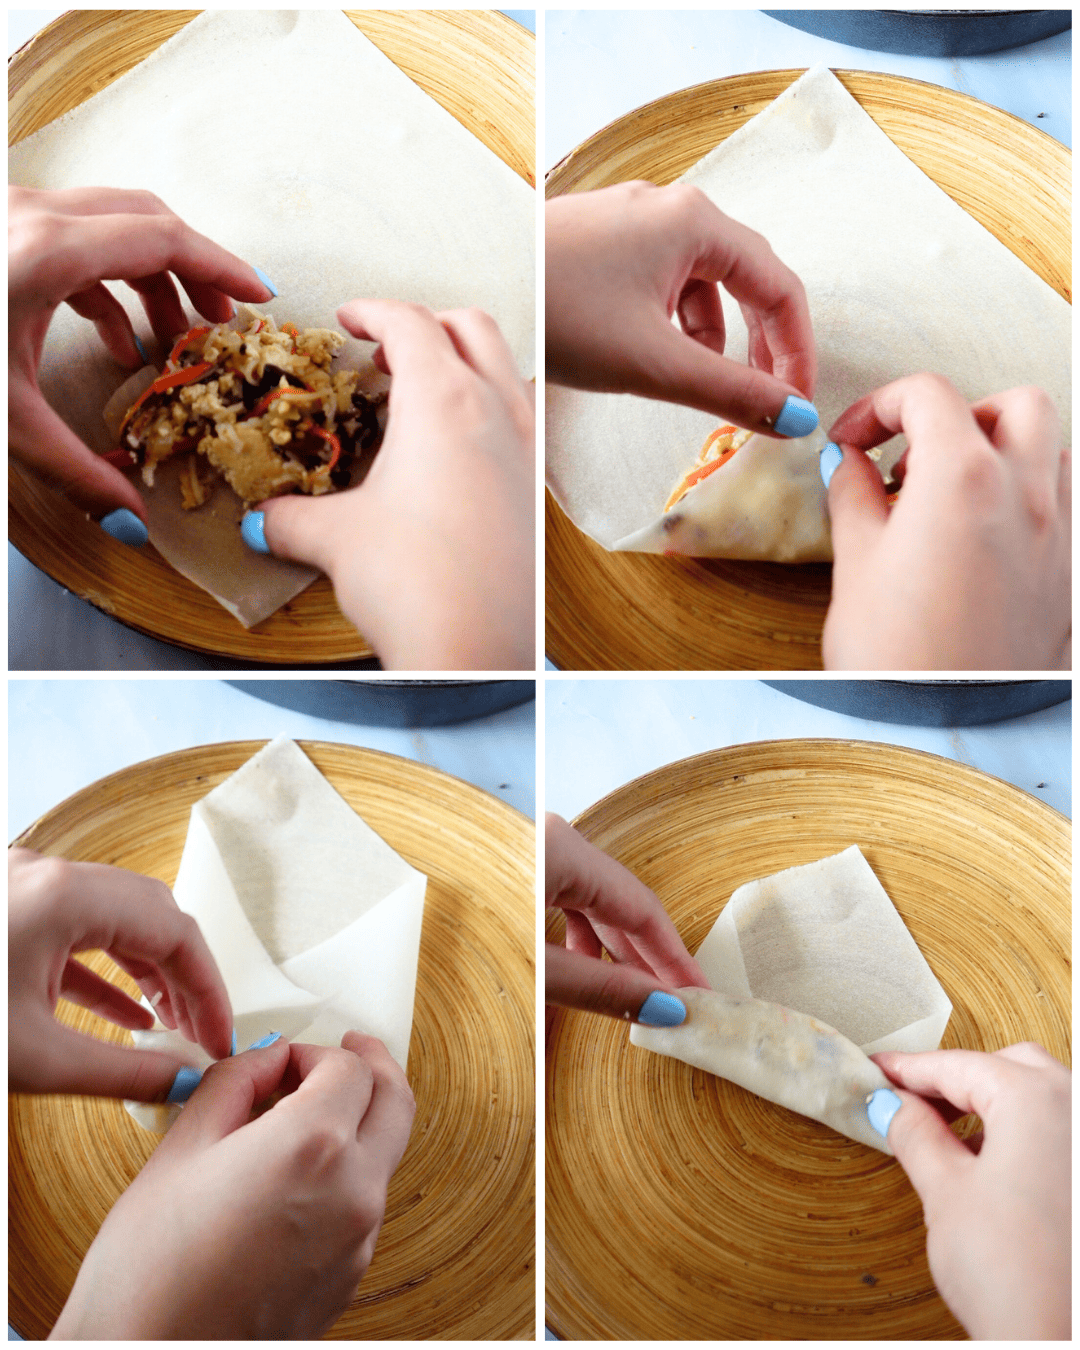 Steps to fold the vegan Egg Rolls